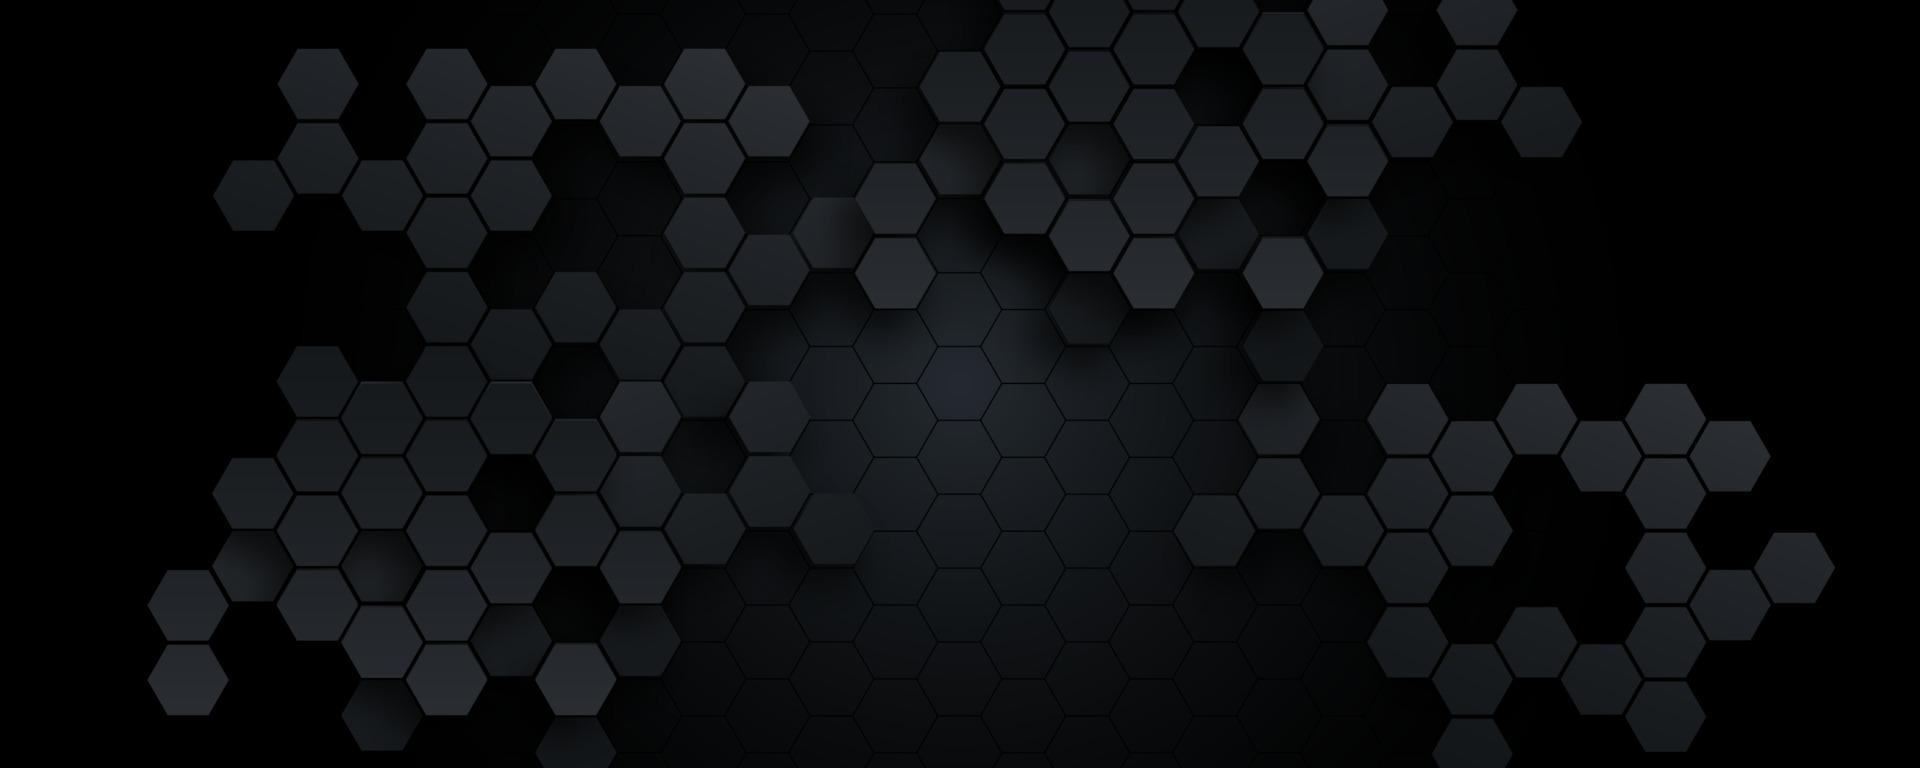 fond de technologie abstraite hexagonale. illustration vectorielle vecteur